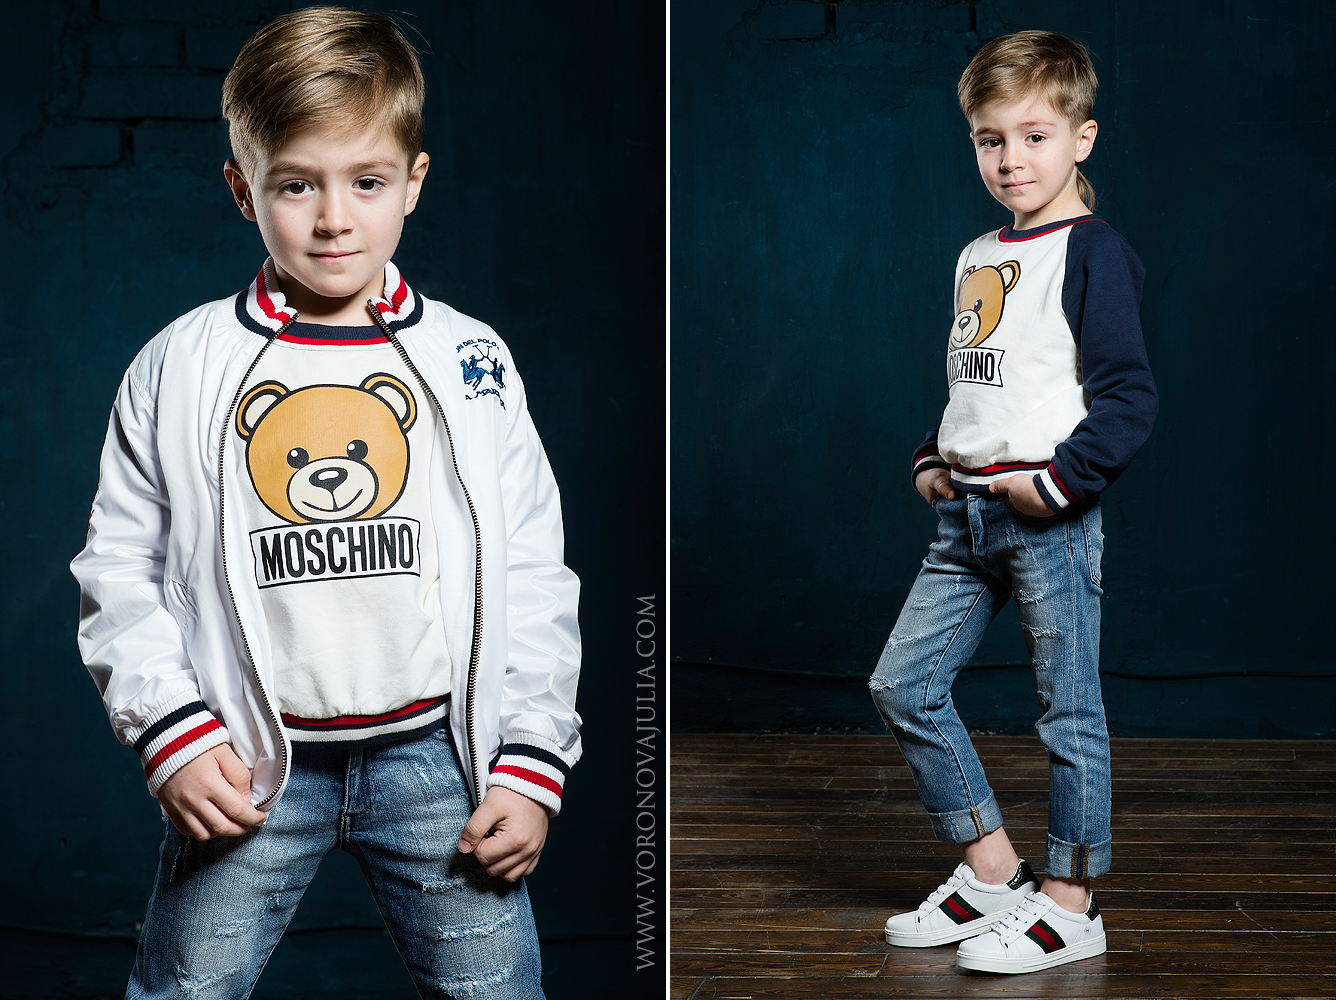 Всеслав Дутов - аккредитованная модель для участия в подиумных показах на Междунродной Детской Неделе моды